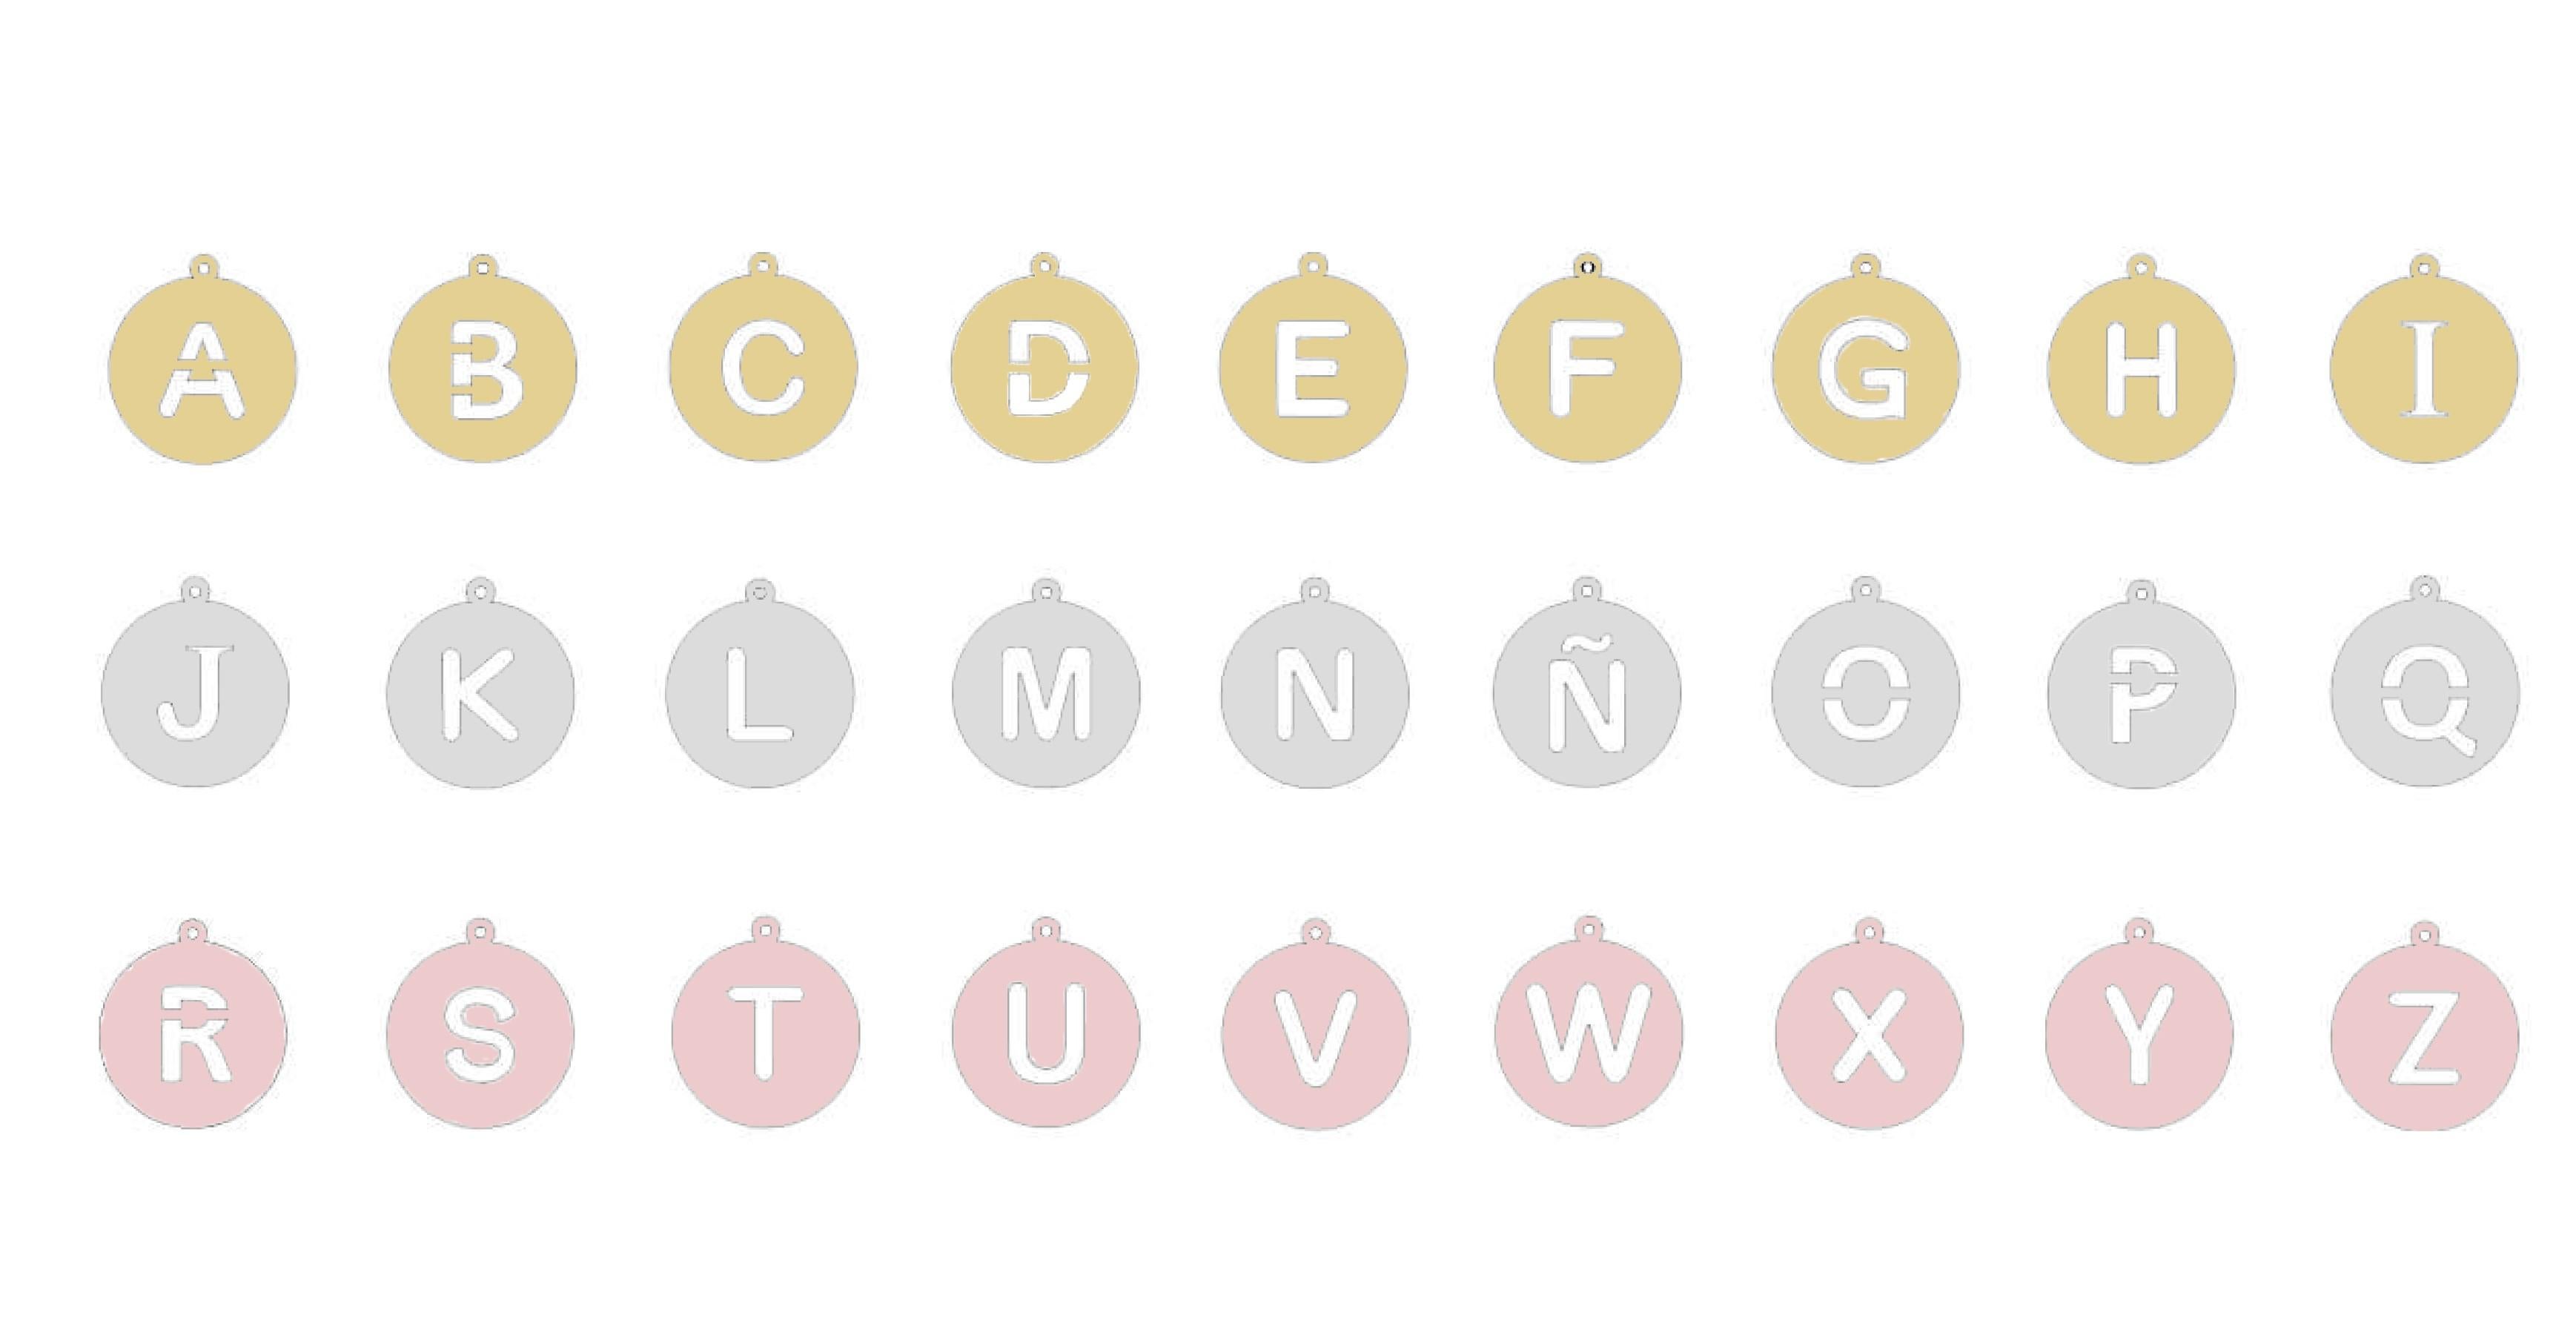  La collection d'alphabets, inspirée de l'iconographie moderne, charmante et audacieuse.....
Métaux en option 3 couleurs, rose, jaune et blanc 

PRÊT À LIVRER
*L'expédition de cette pièce n'est pas affectée par COVID-19. Les commandes sont les